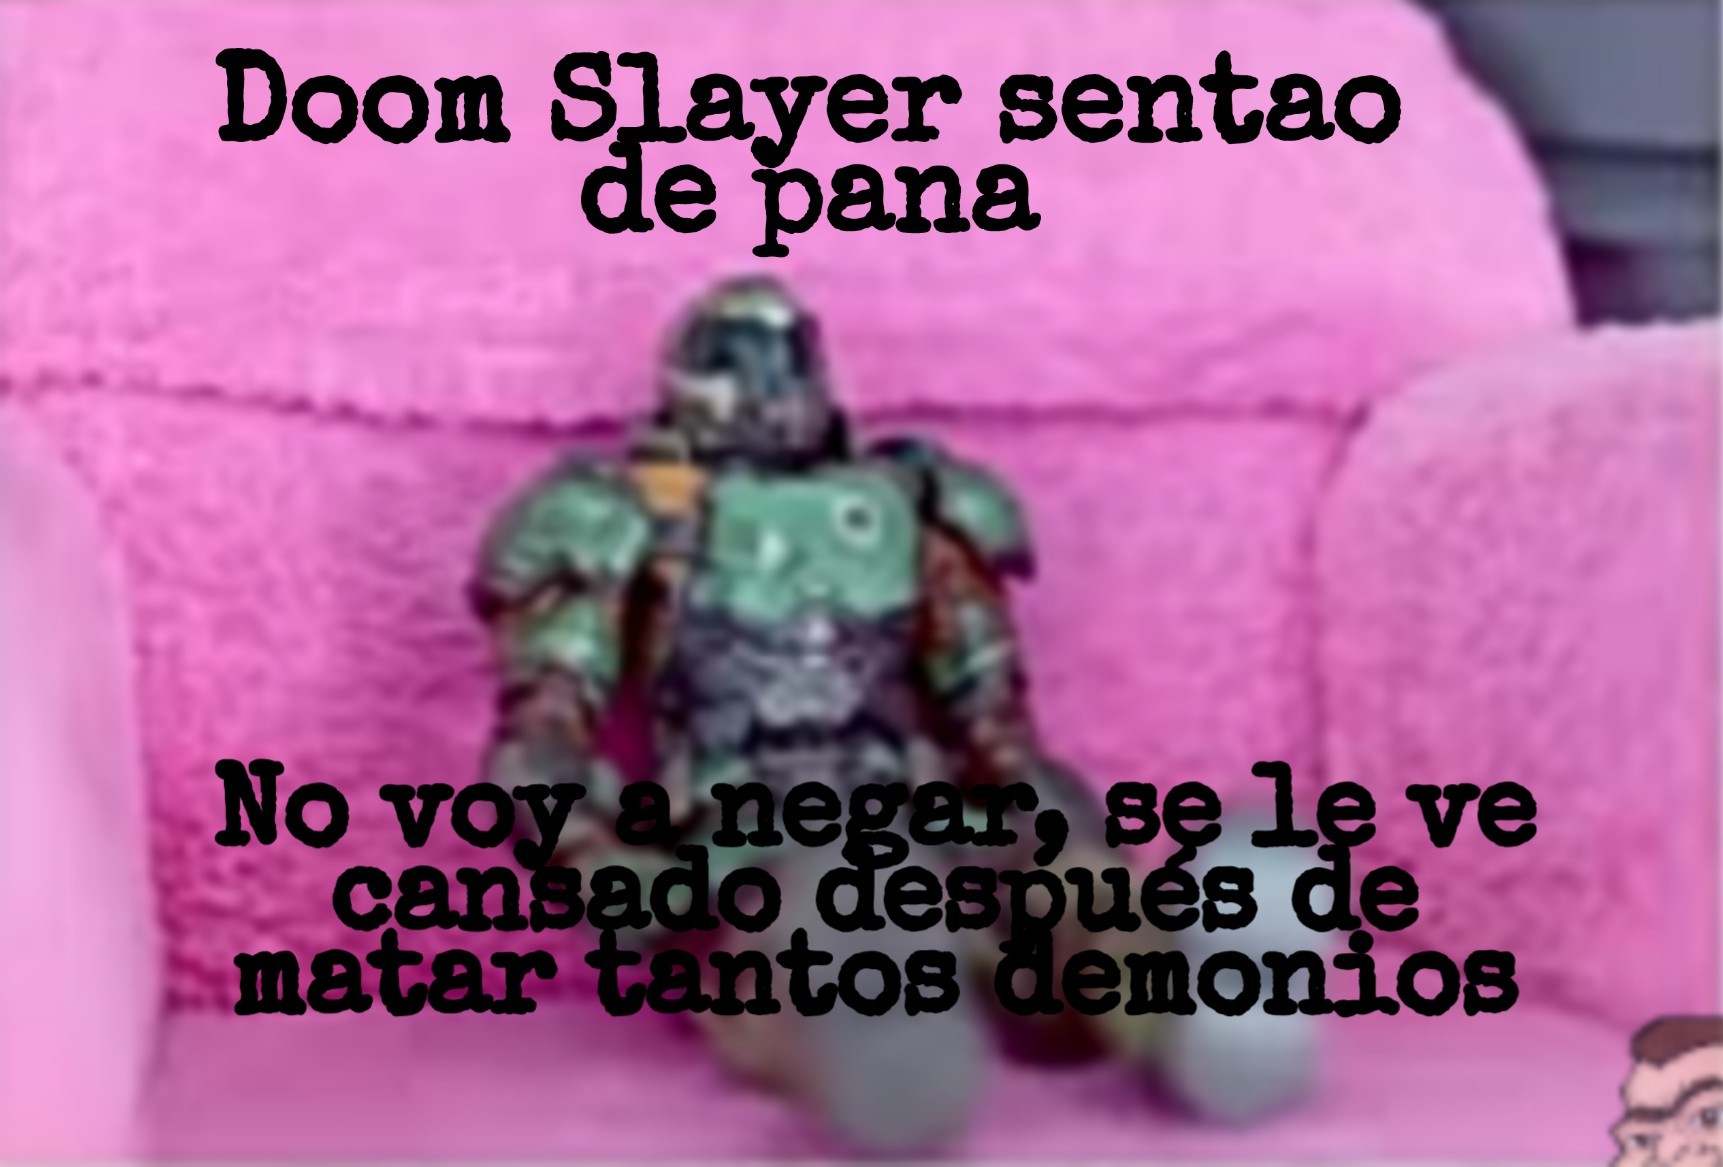 Descansa un ratito Slayer <3 - meme